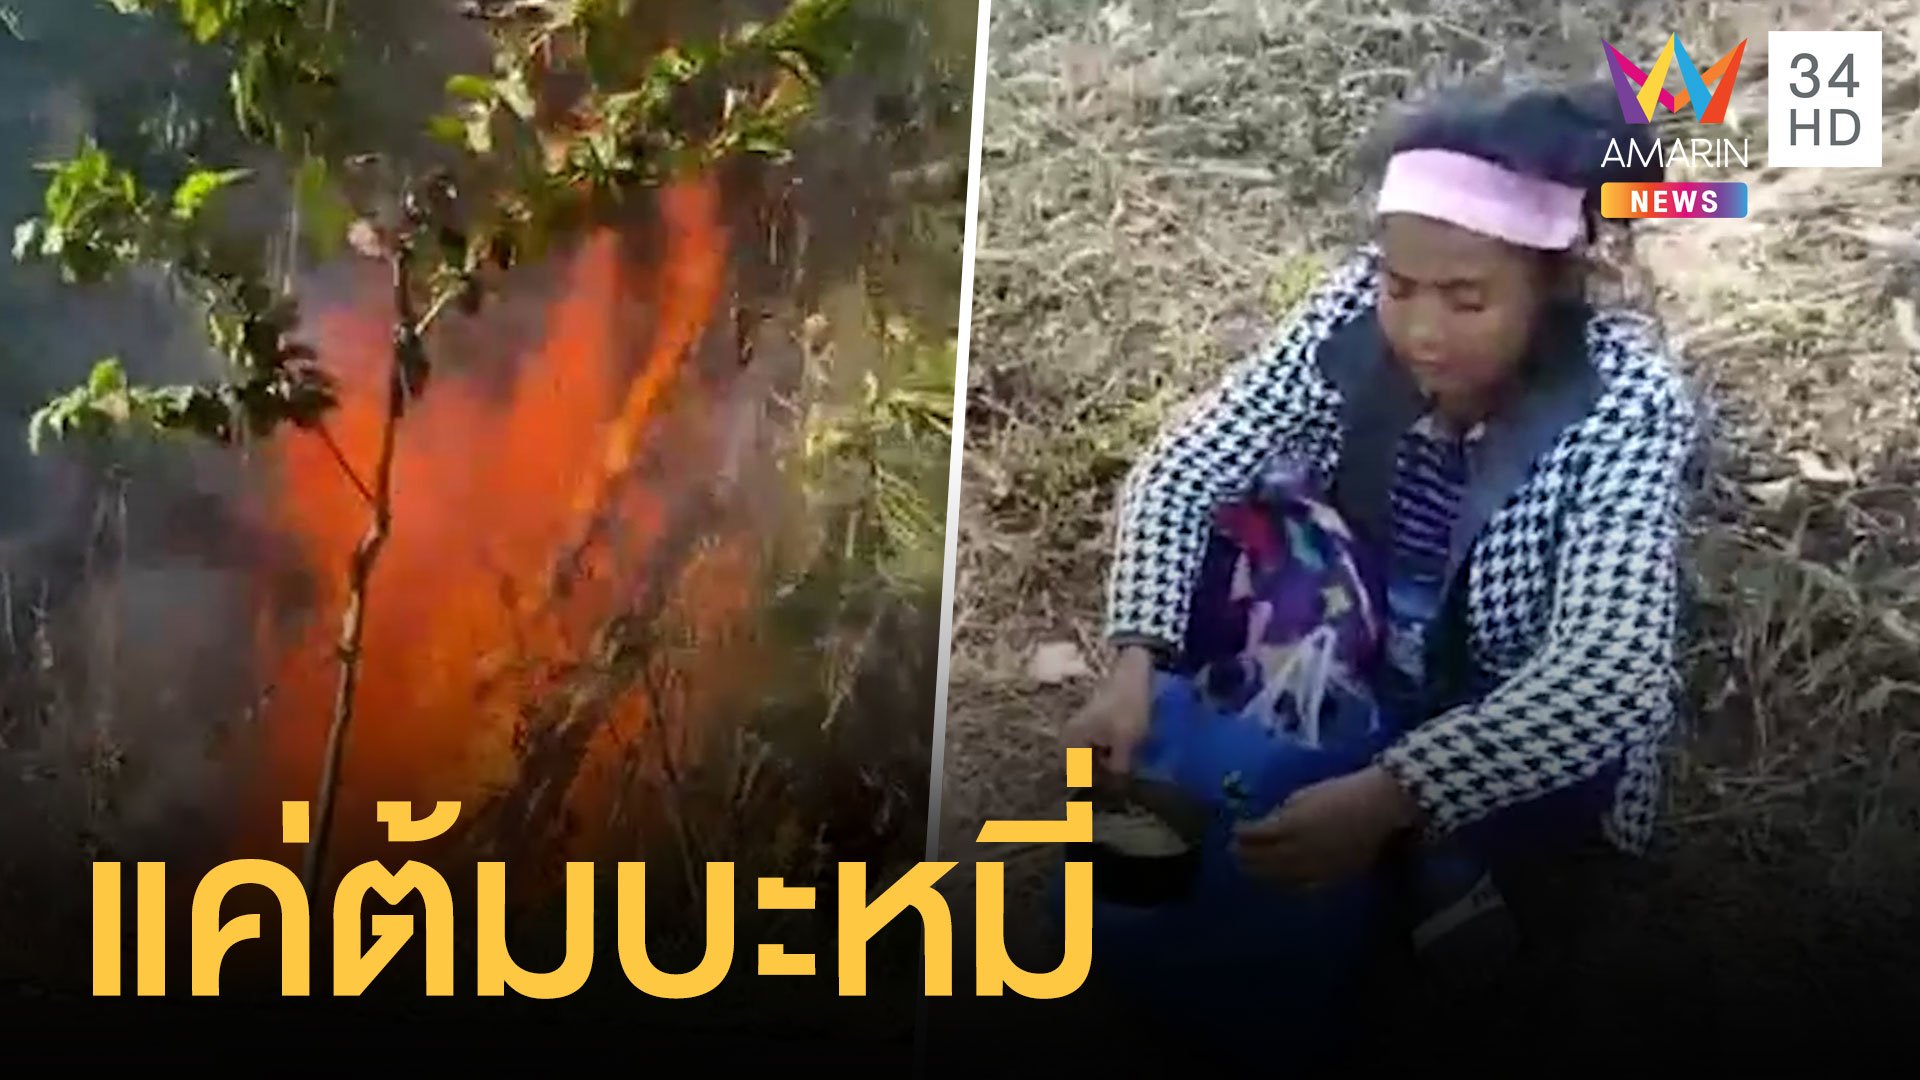 ไฟไหม้ป่าเพราะสาวเมียนมาต้มบะหมี่ | ข่าวอรุณอมรินทร์ | 4 ม.ค. 64 | AMARIN TVHD34